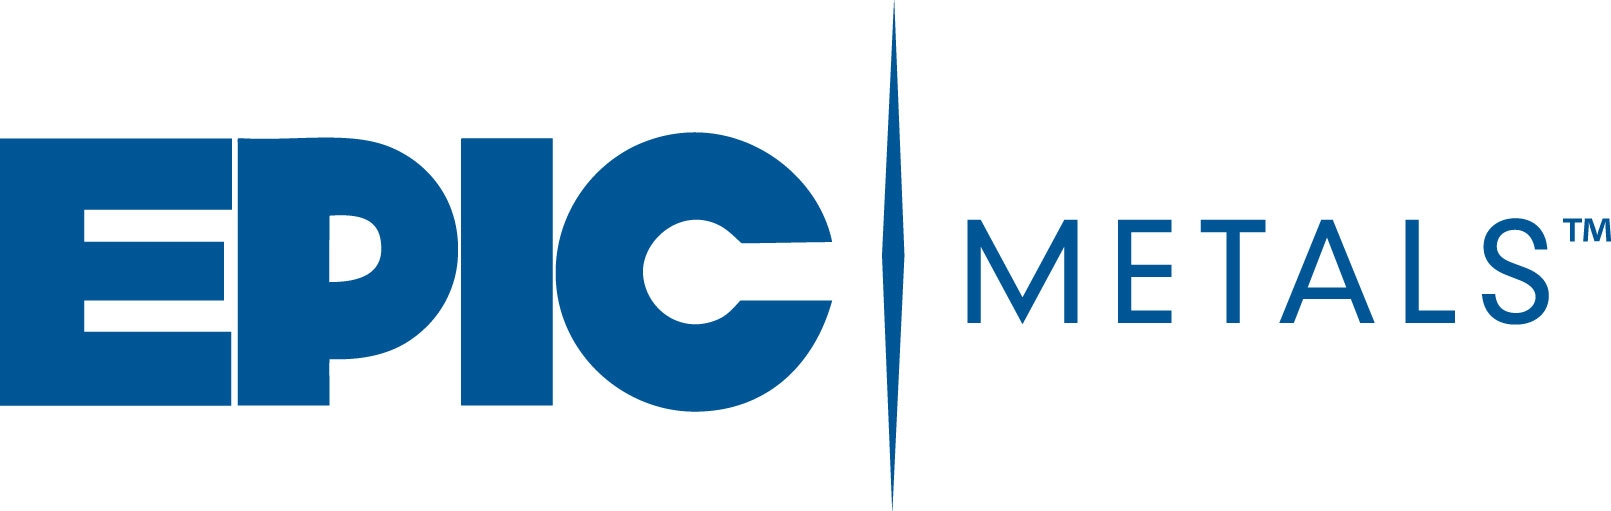 EPIC METALS Logo PMS294